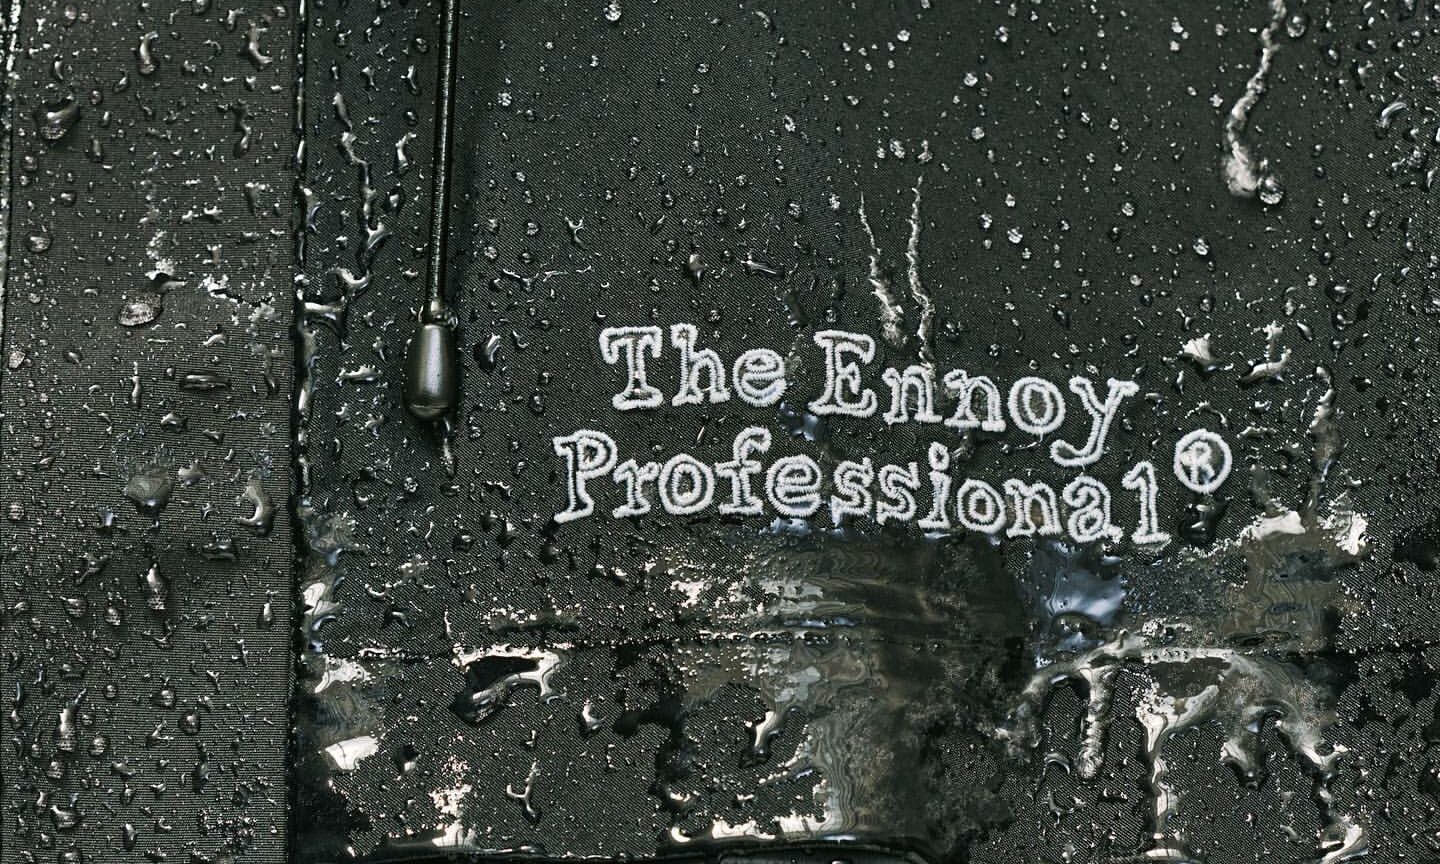 DAIWA PIER39 x The Ennoy Professional x STYLIST SHIBUTSU 推出合作系列